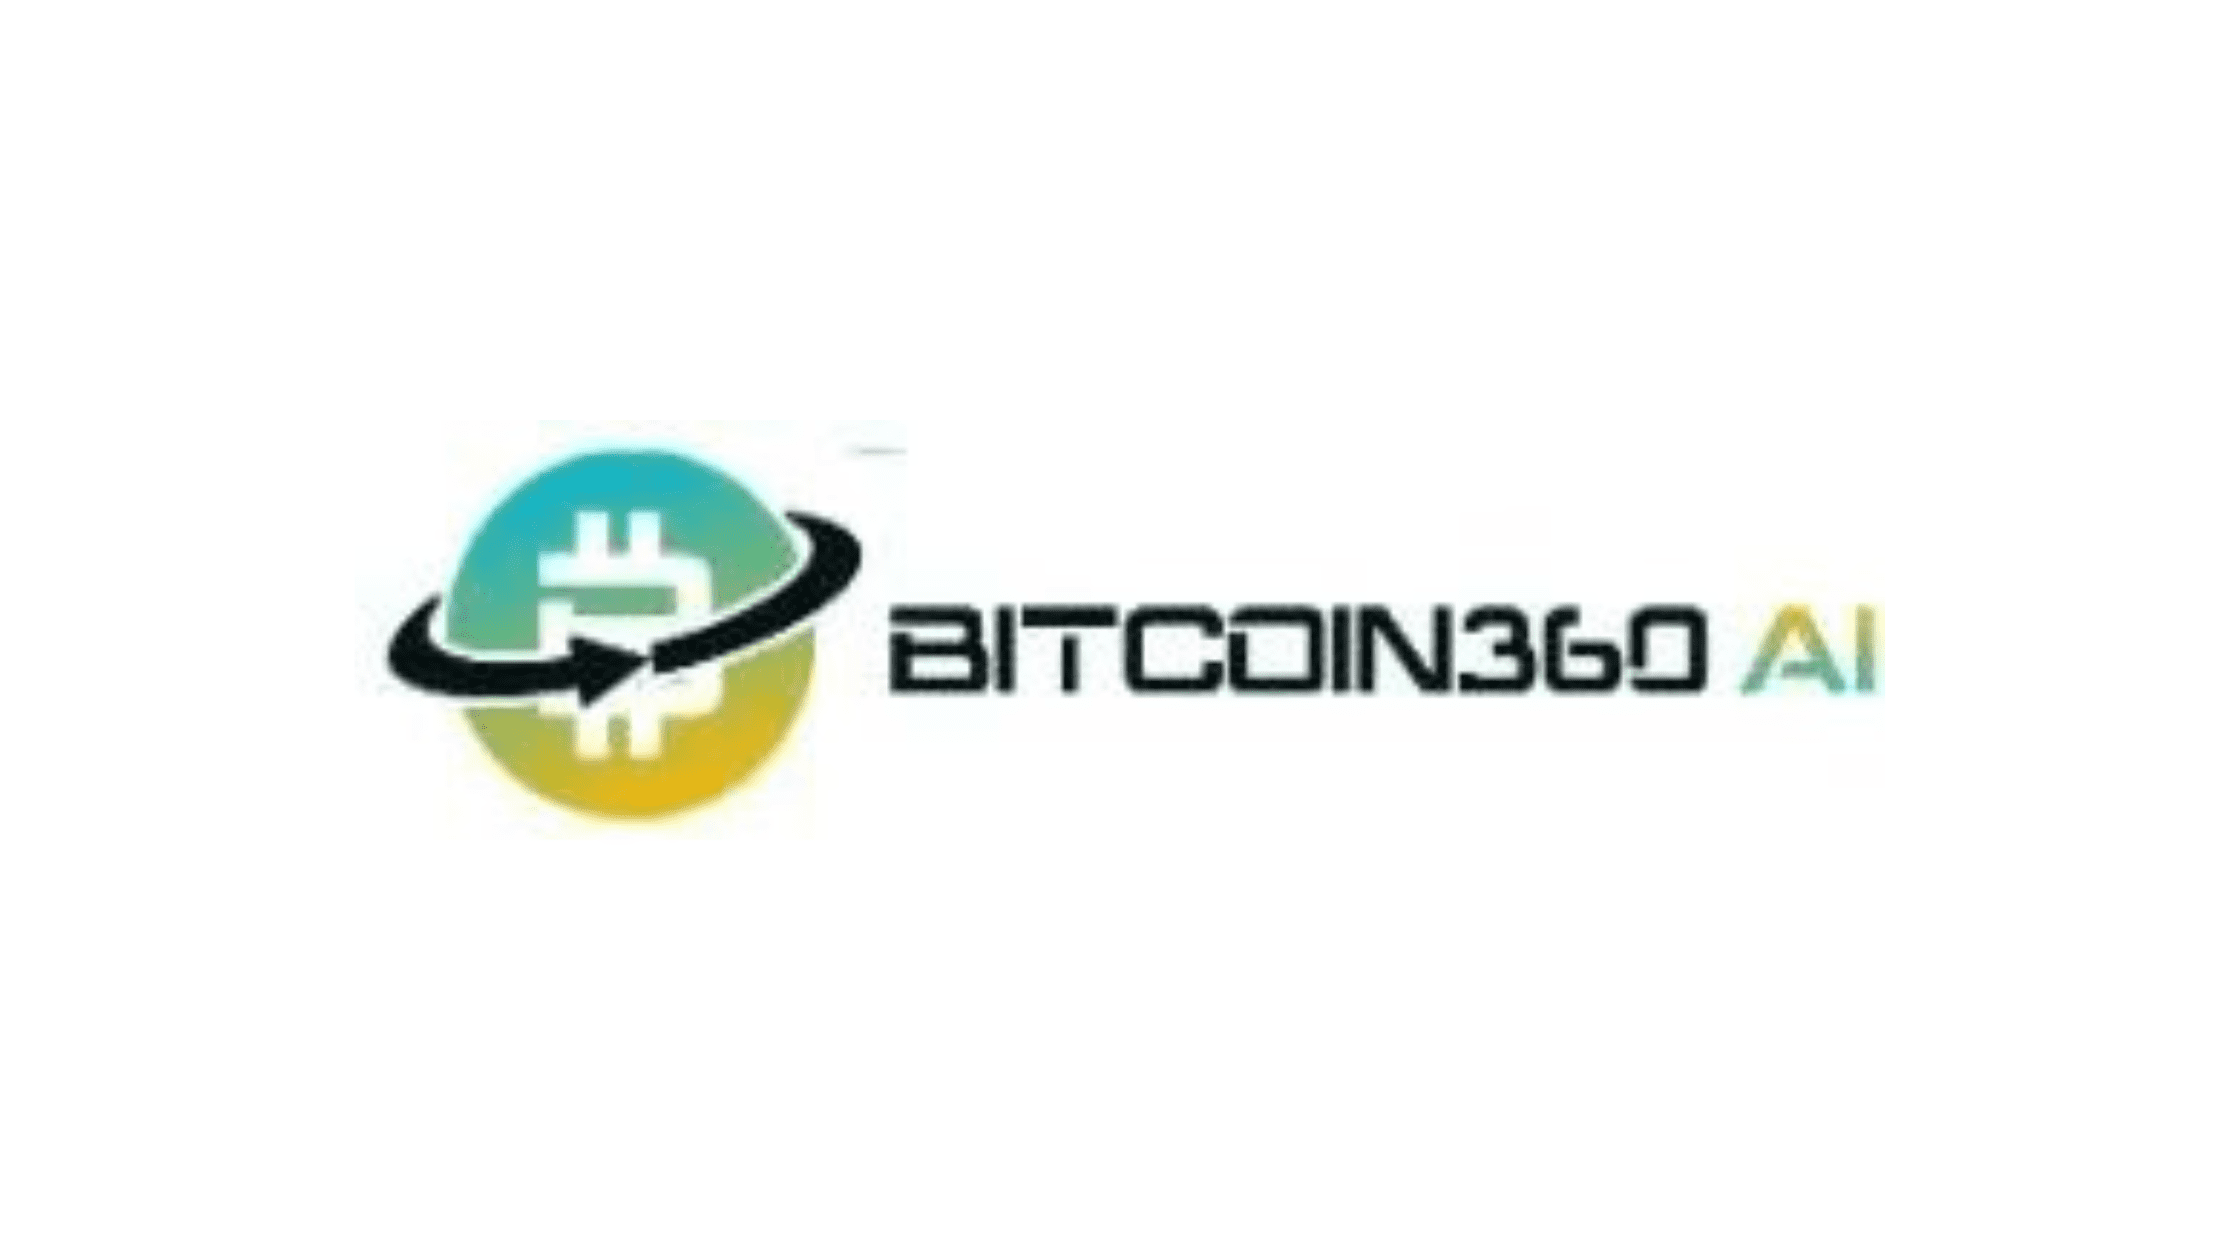 Bitcoin 360 AI Reviews